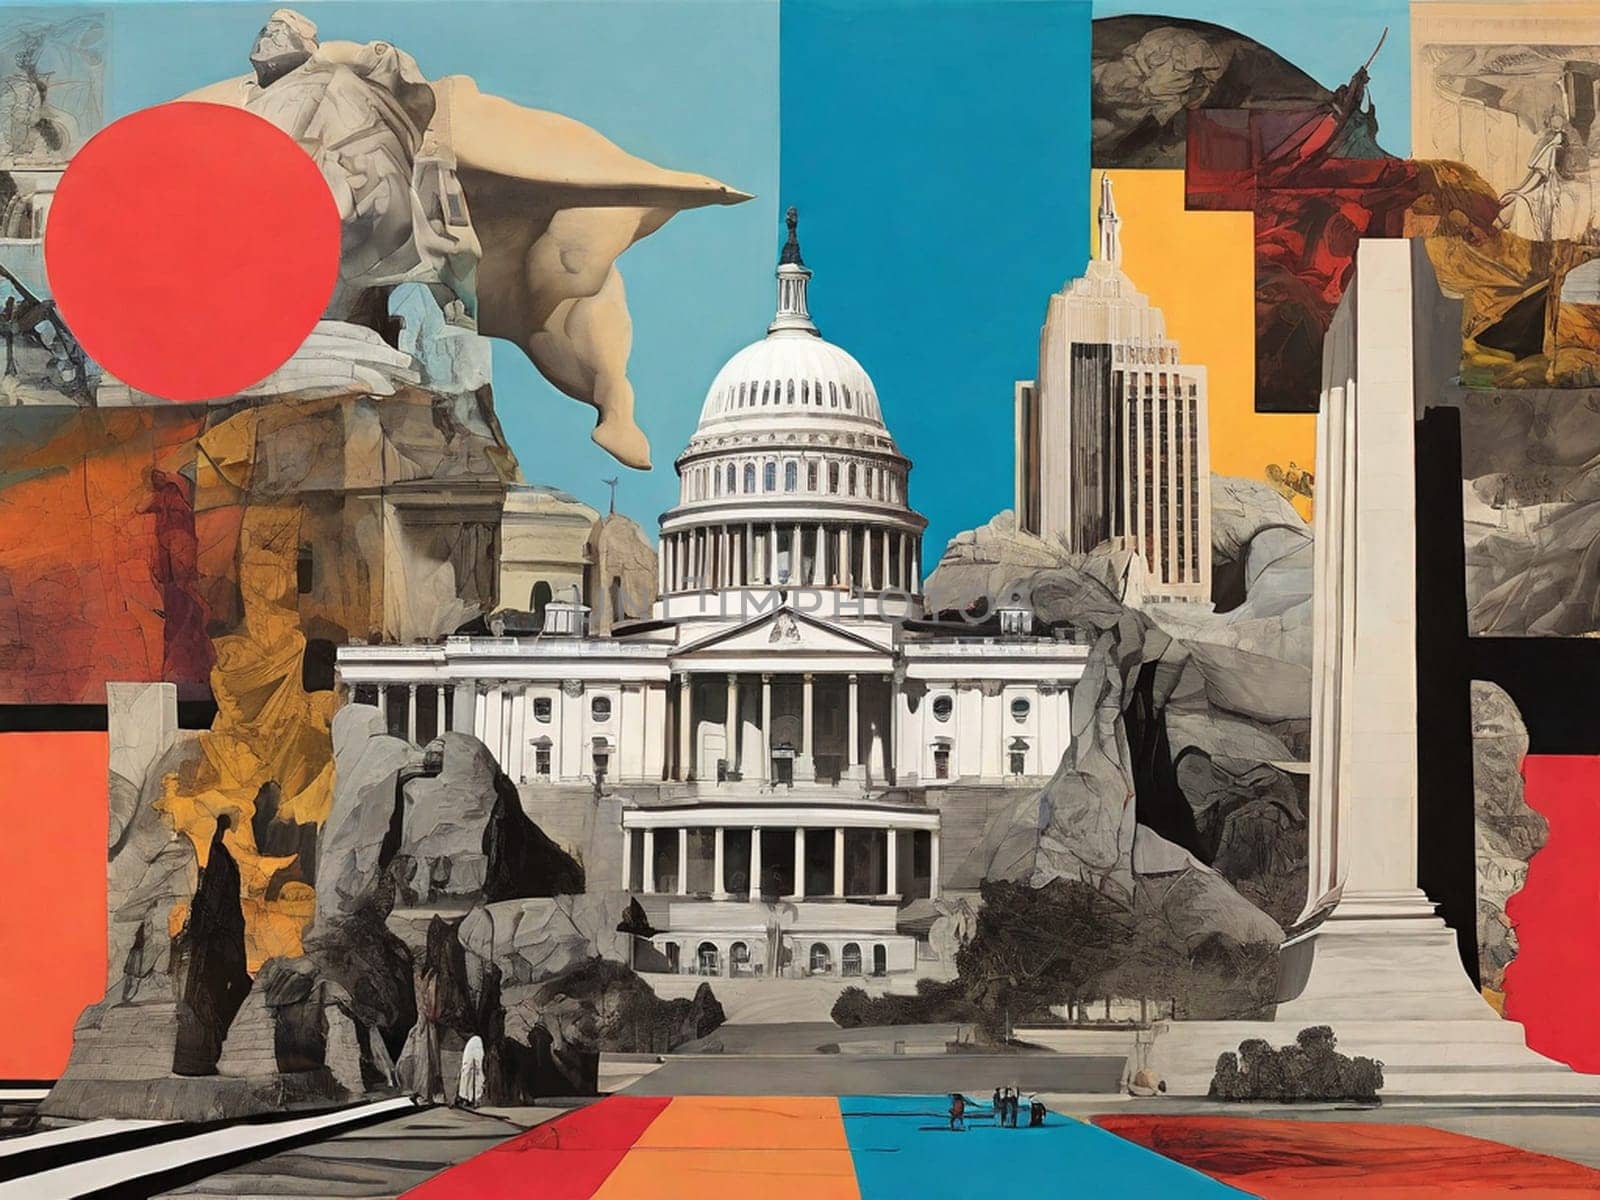 Collage of Washington DC landmarks. by Vailatese46